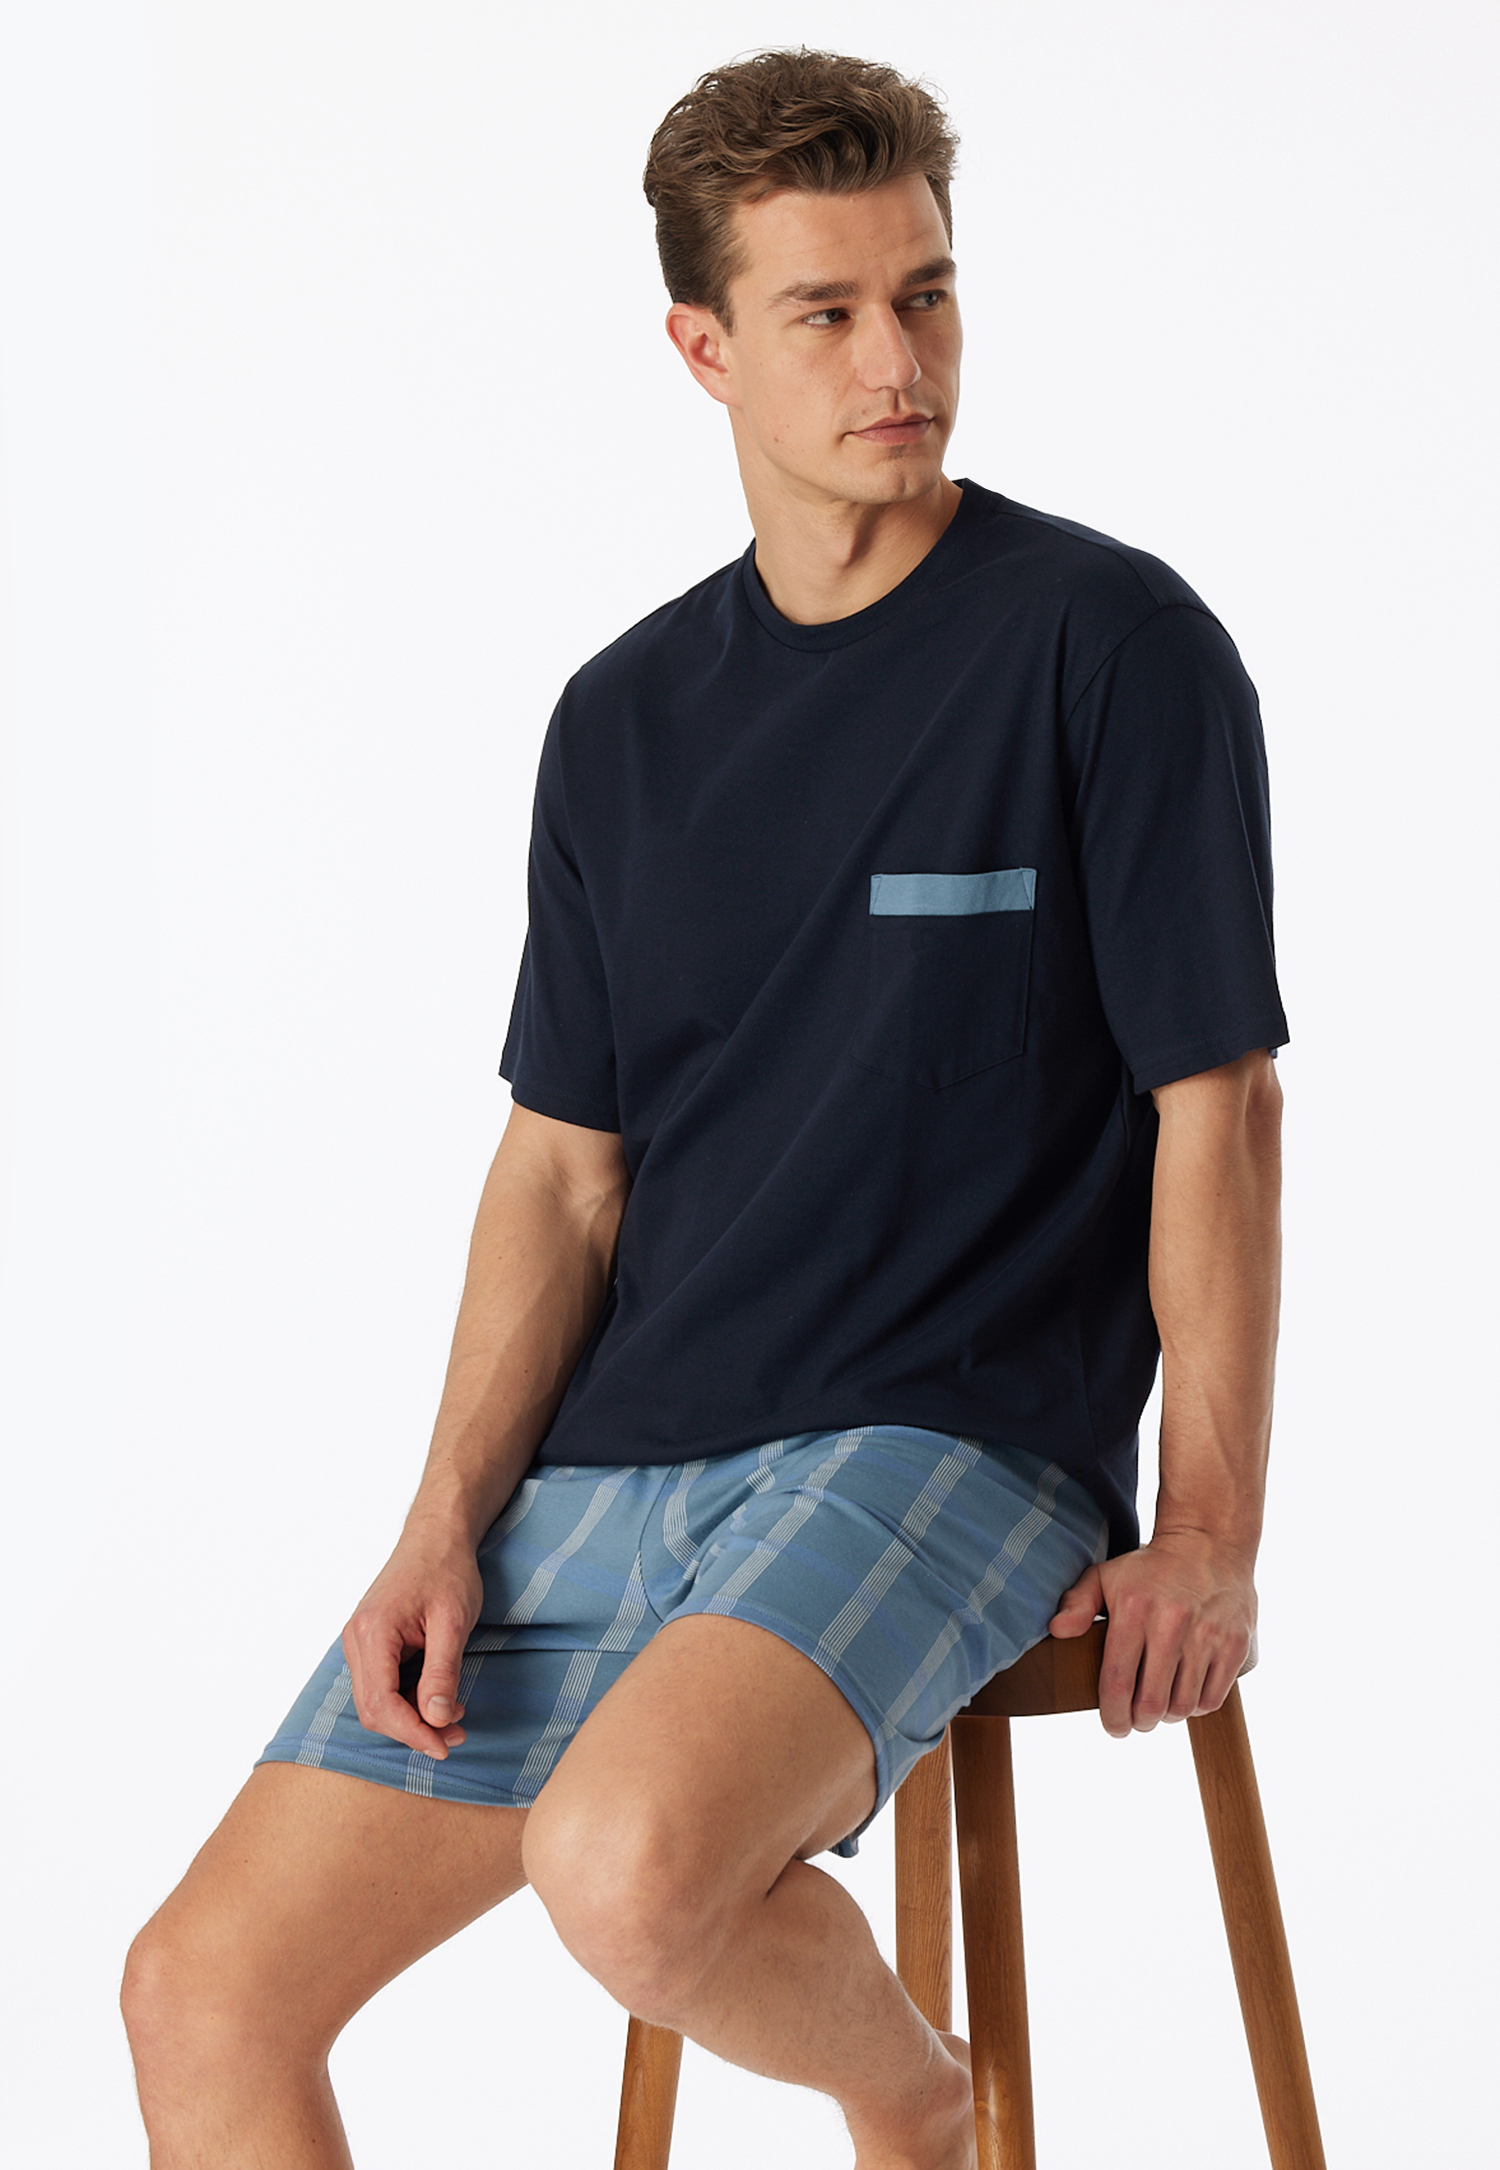 Schlafanzug kurz Organic Cotton Karos admiral - Comfort Nightwear 54 von Schiesser